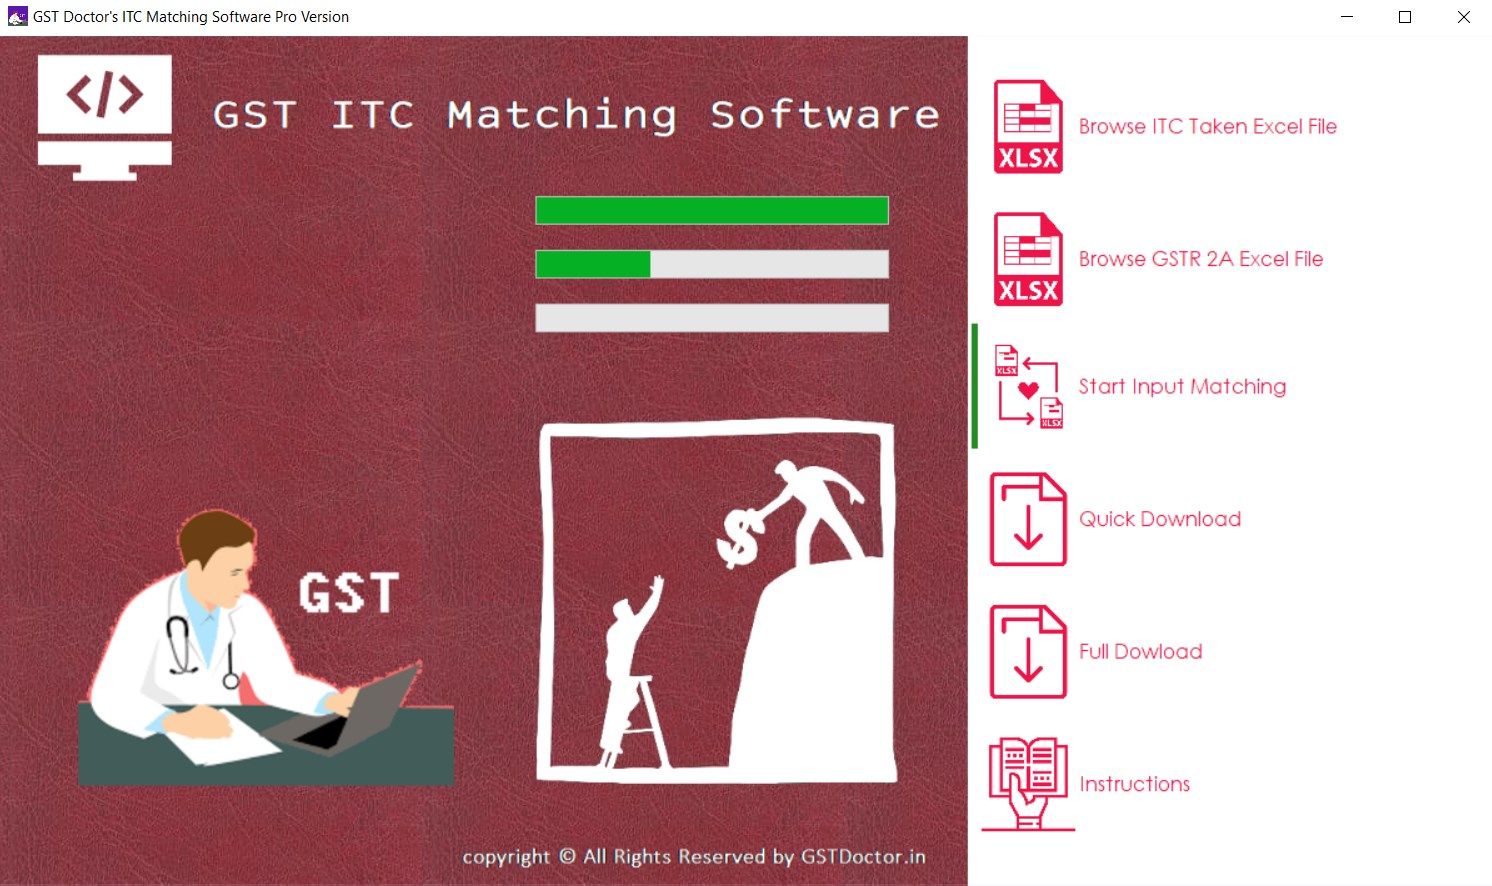 ITC Matching Software